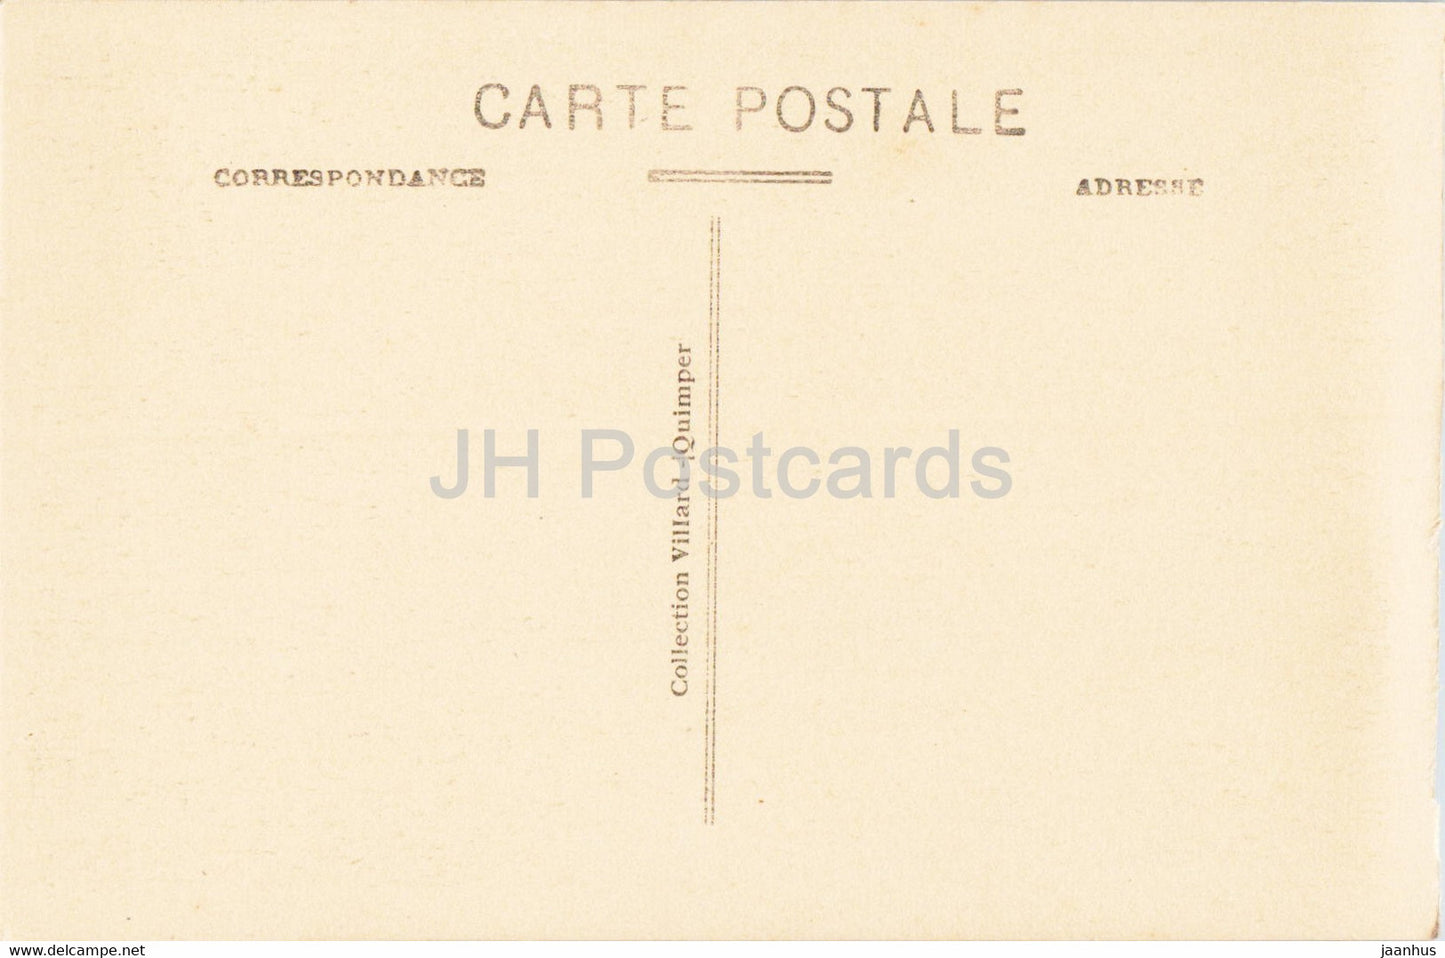 Josselin - Interieur du Château - La Bibliothèque - bibliothèque - château - 4990 - carte postale ancienne - France - inutilisée